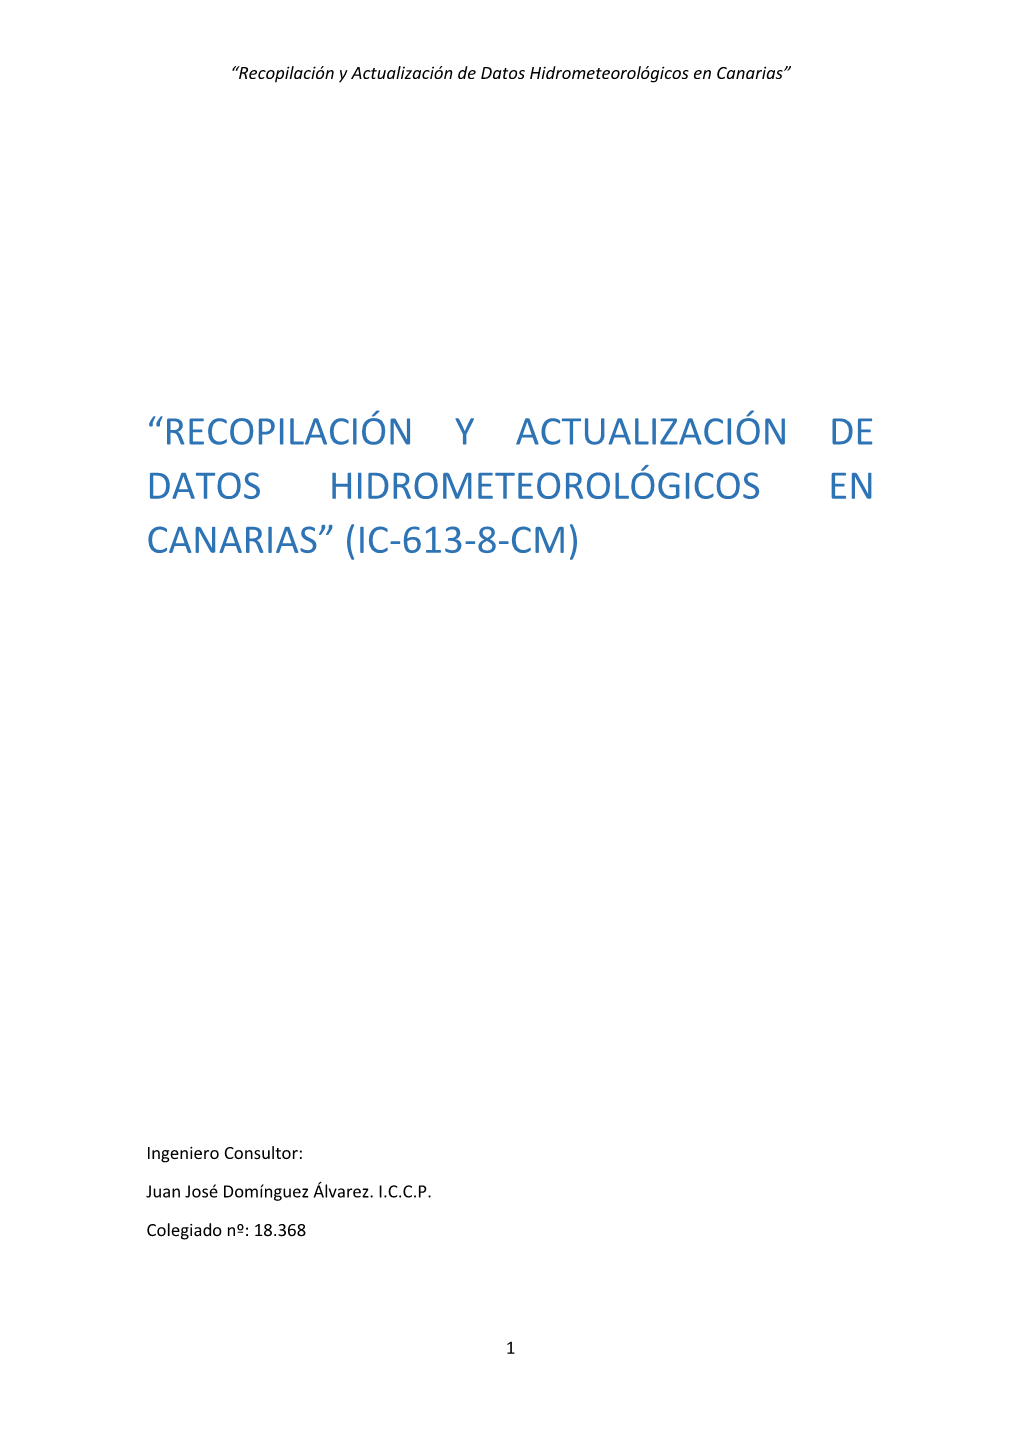 Recopilación Y Actualización De Datos Hidrometeorológicos En Canarias”